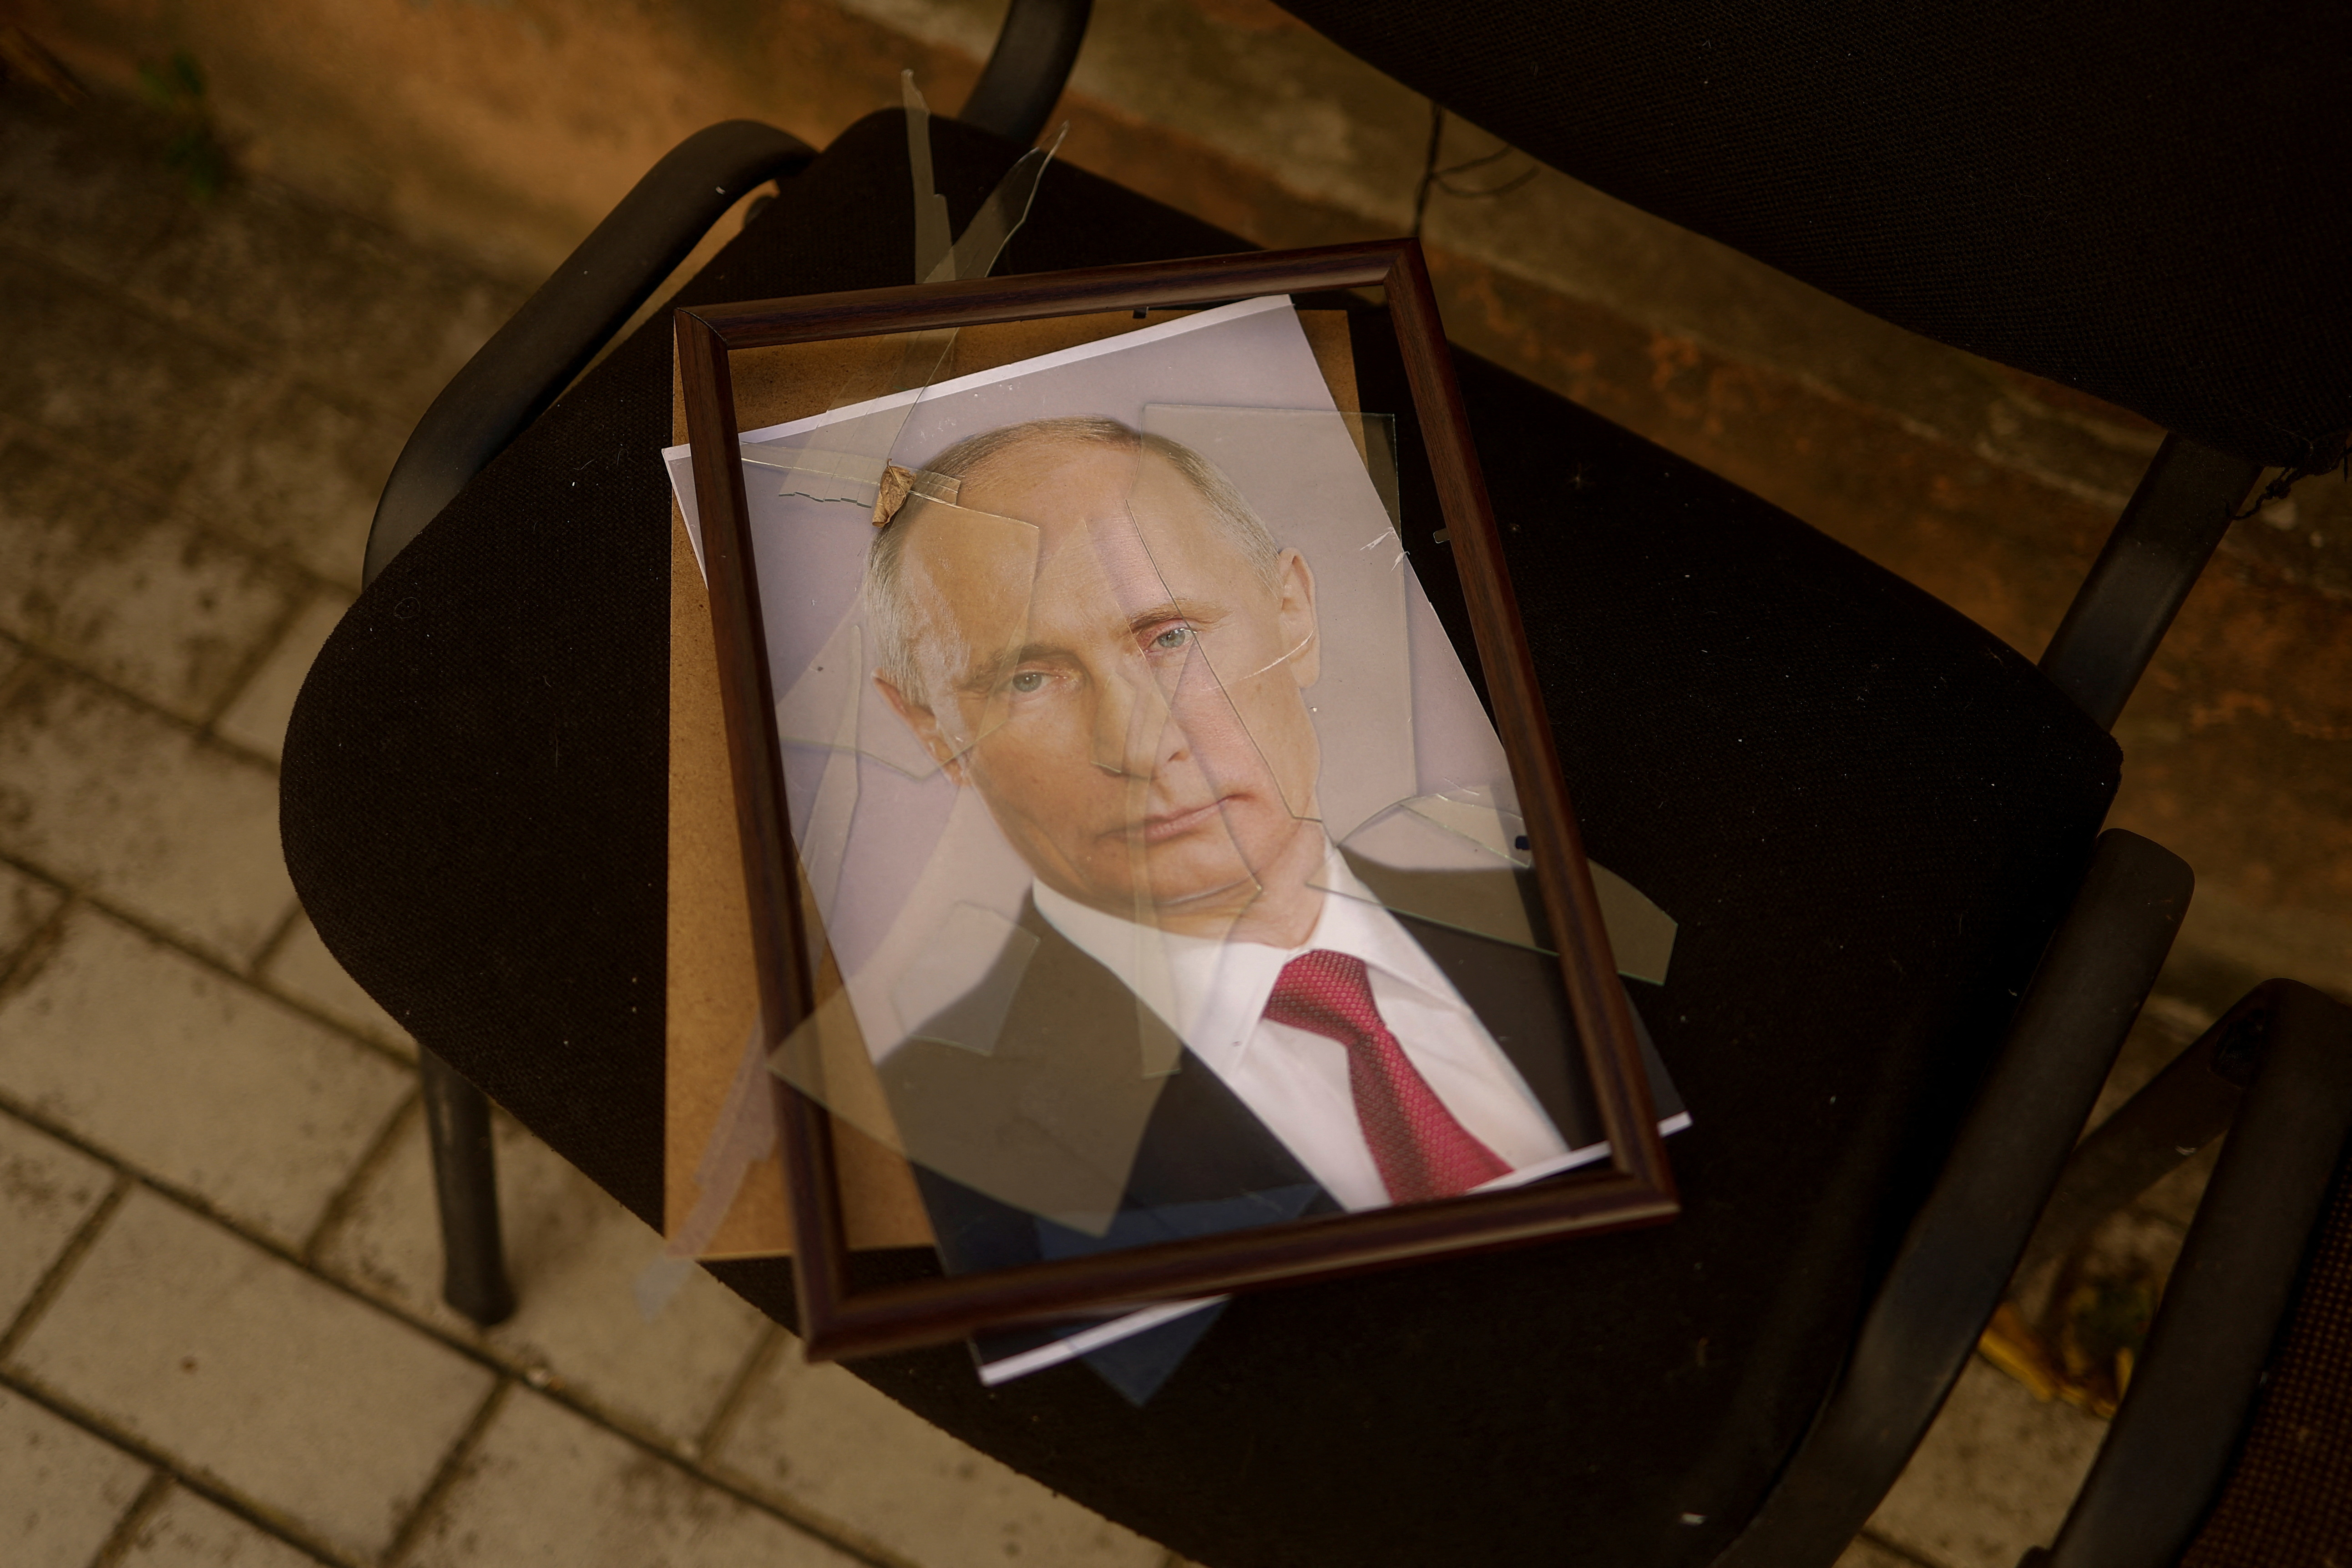 Un retrato del jefe de estado ruso Vladimir Putin se ve en un centro de detención preliminar que los ucranianos dicen que fue utilizado por los miembros del servicio ruso para encarcelar y torturar a la gente antes de retirarse, Kherson, Ucrania este 15 de noviembre de 2022 (Reuters)